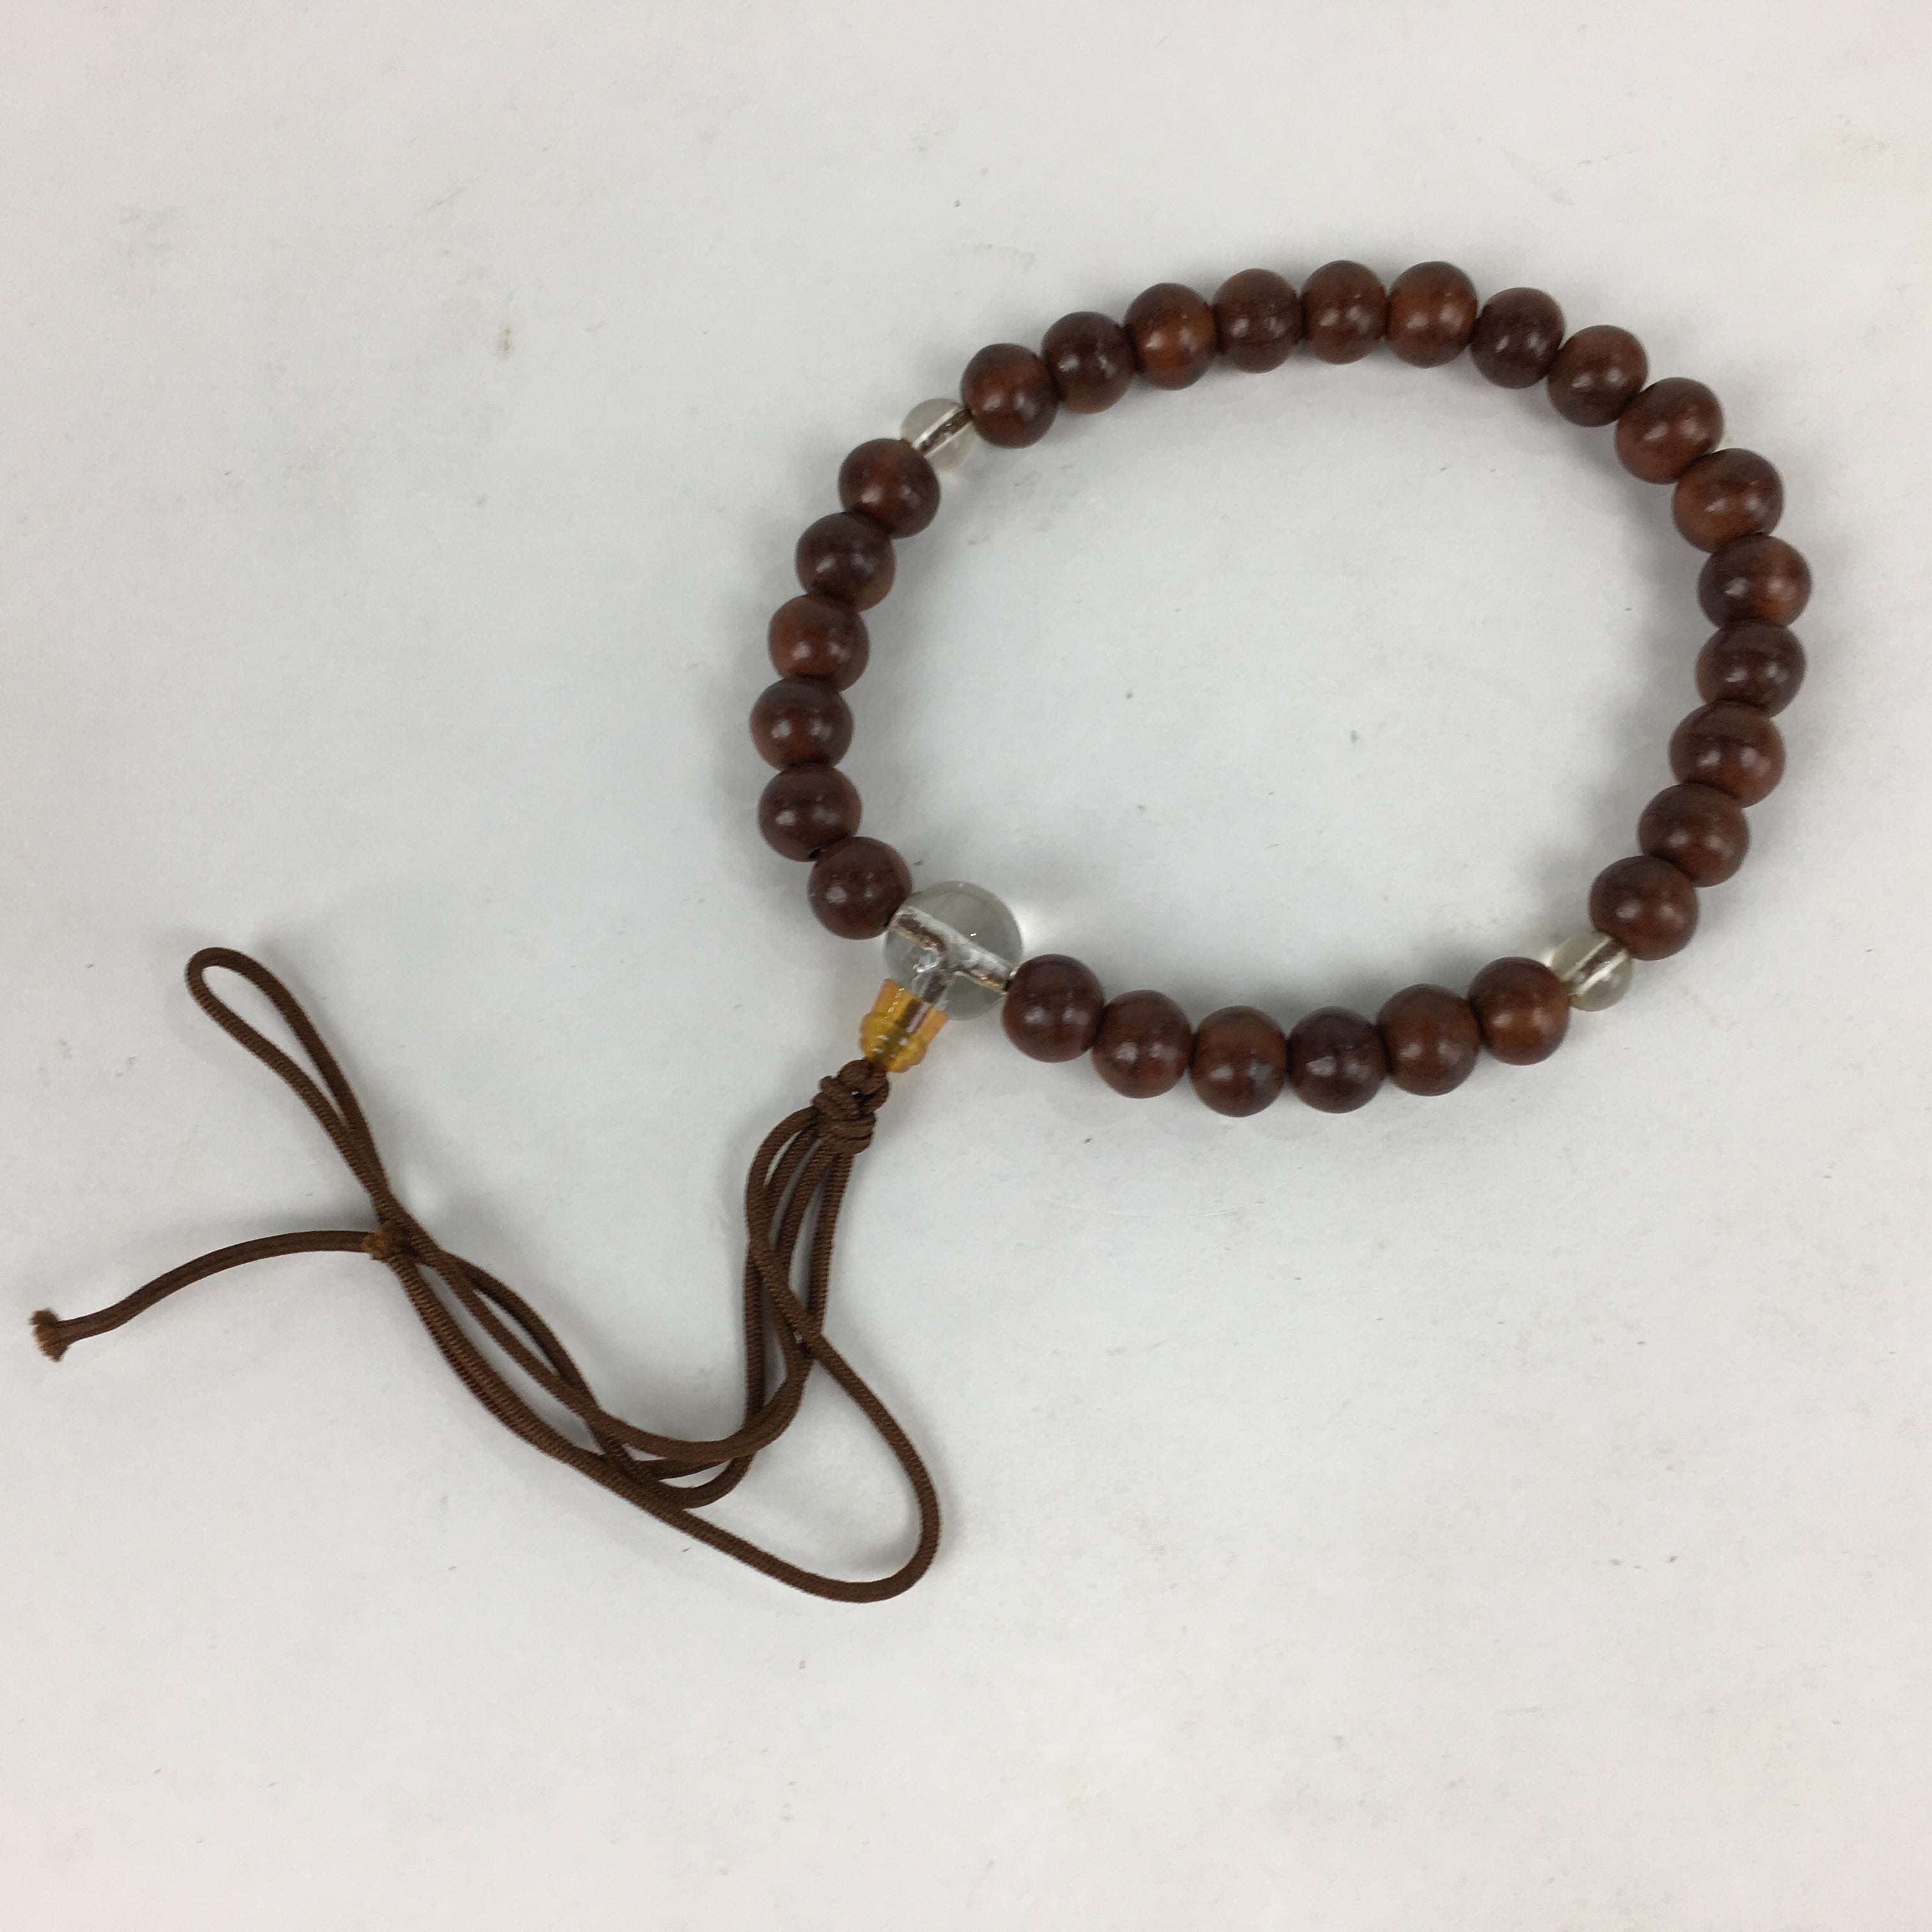 Buy Boxwood Handmade Custom Rosary Bracelet Online in India - Etsy